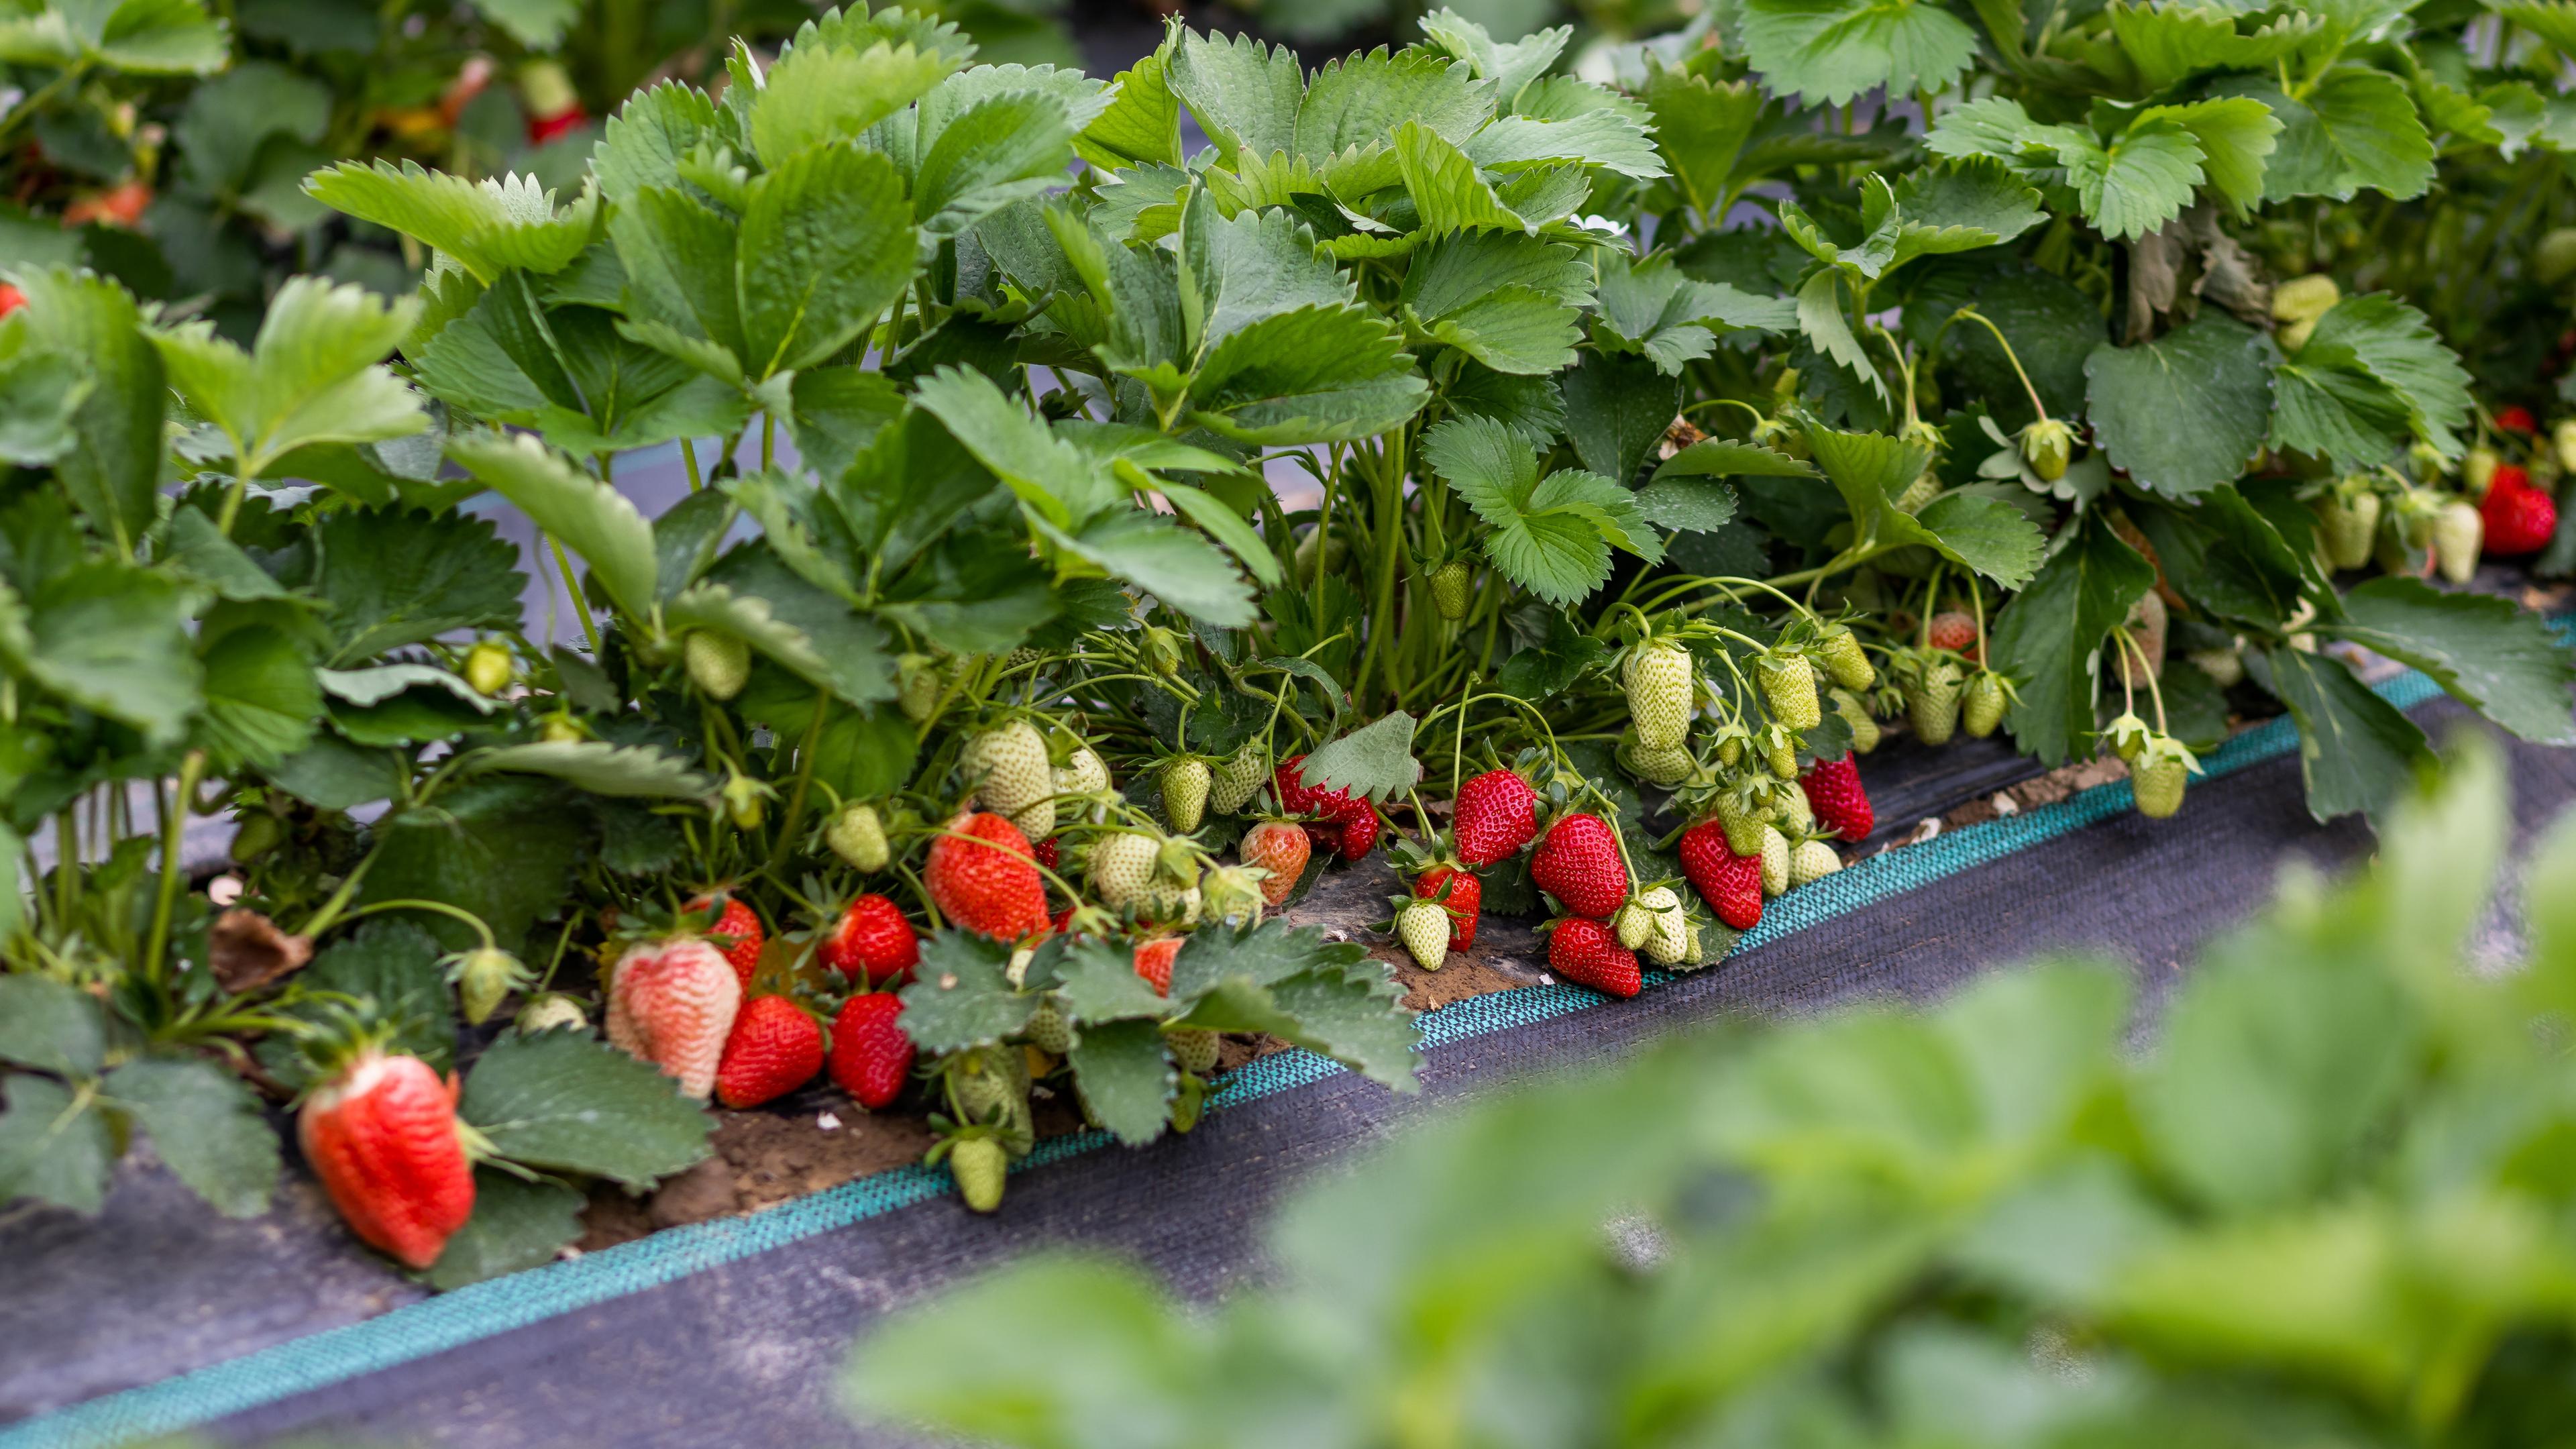 Reife und unreife Früchte an Erdbeerpflanzen